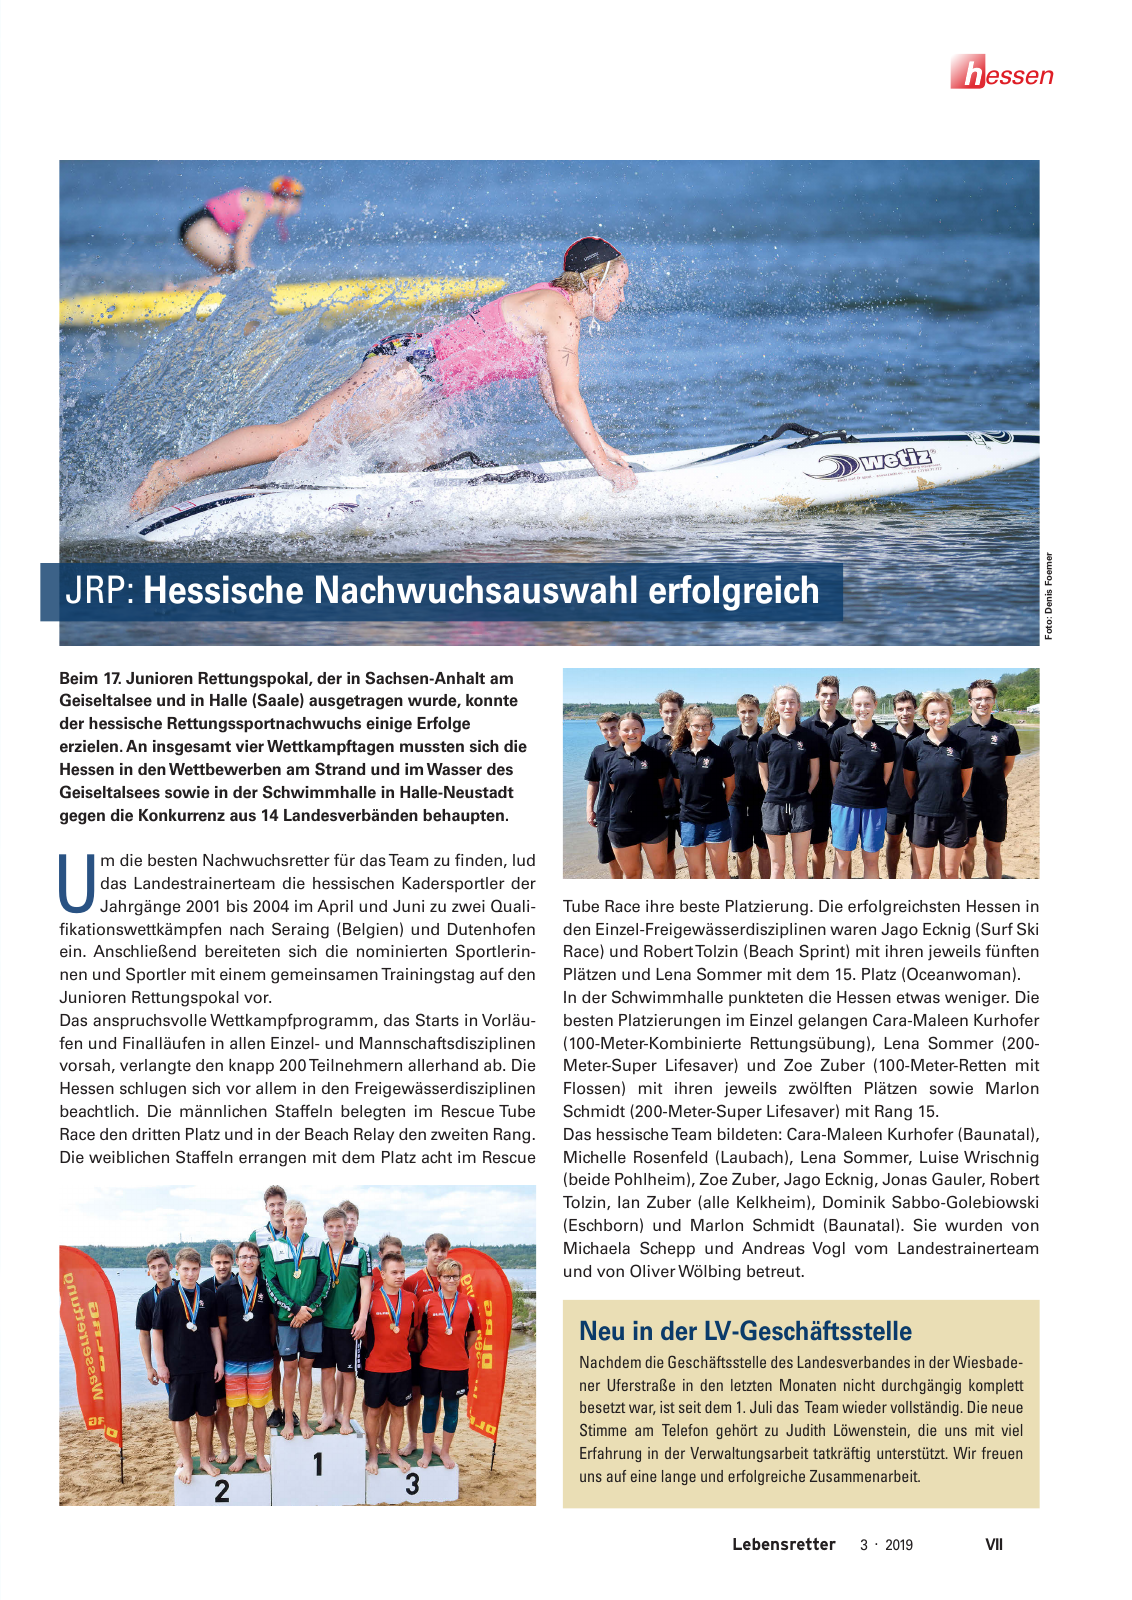 Vorschau Lebensretter 3/2019 - Hessen Regionalausgabe Seite 9